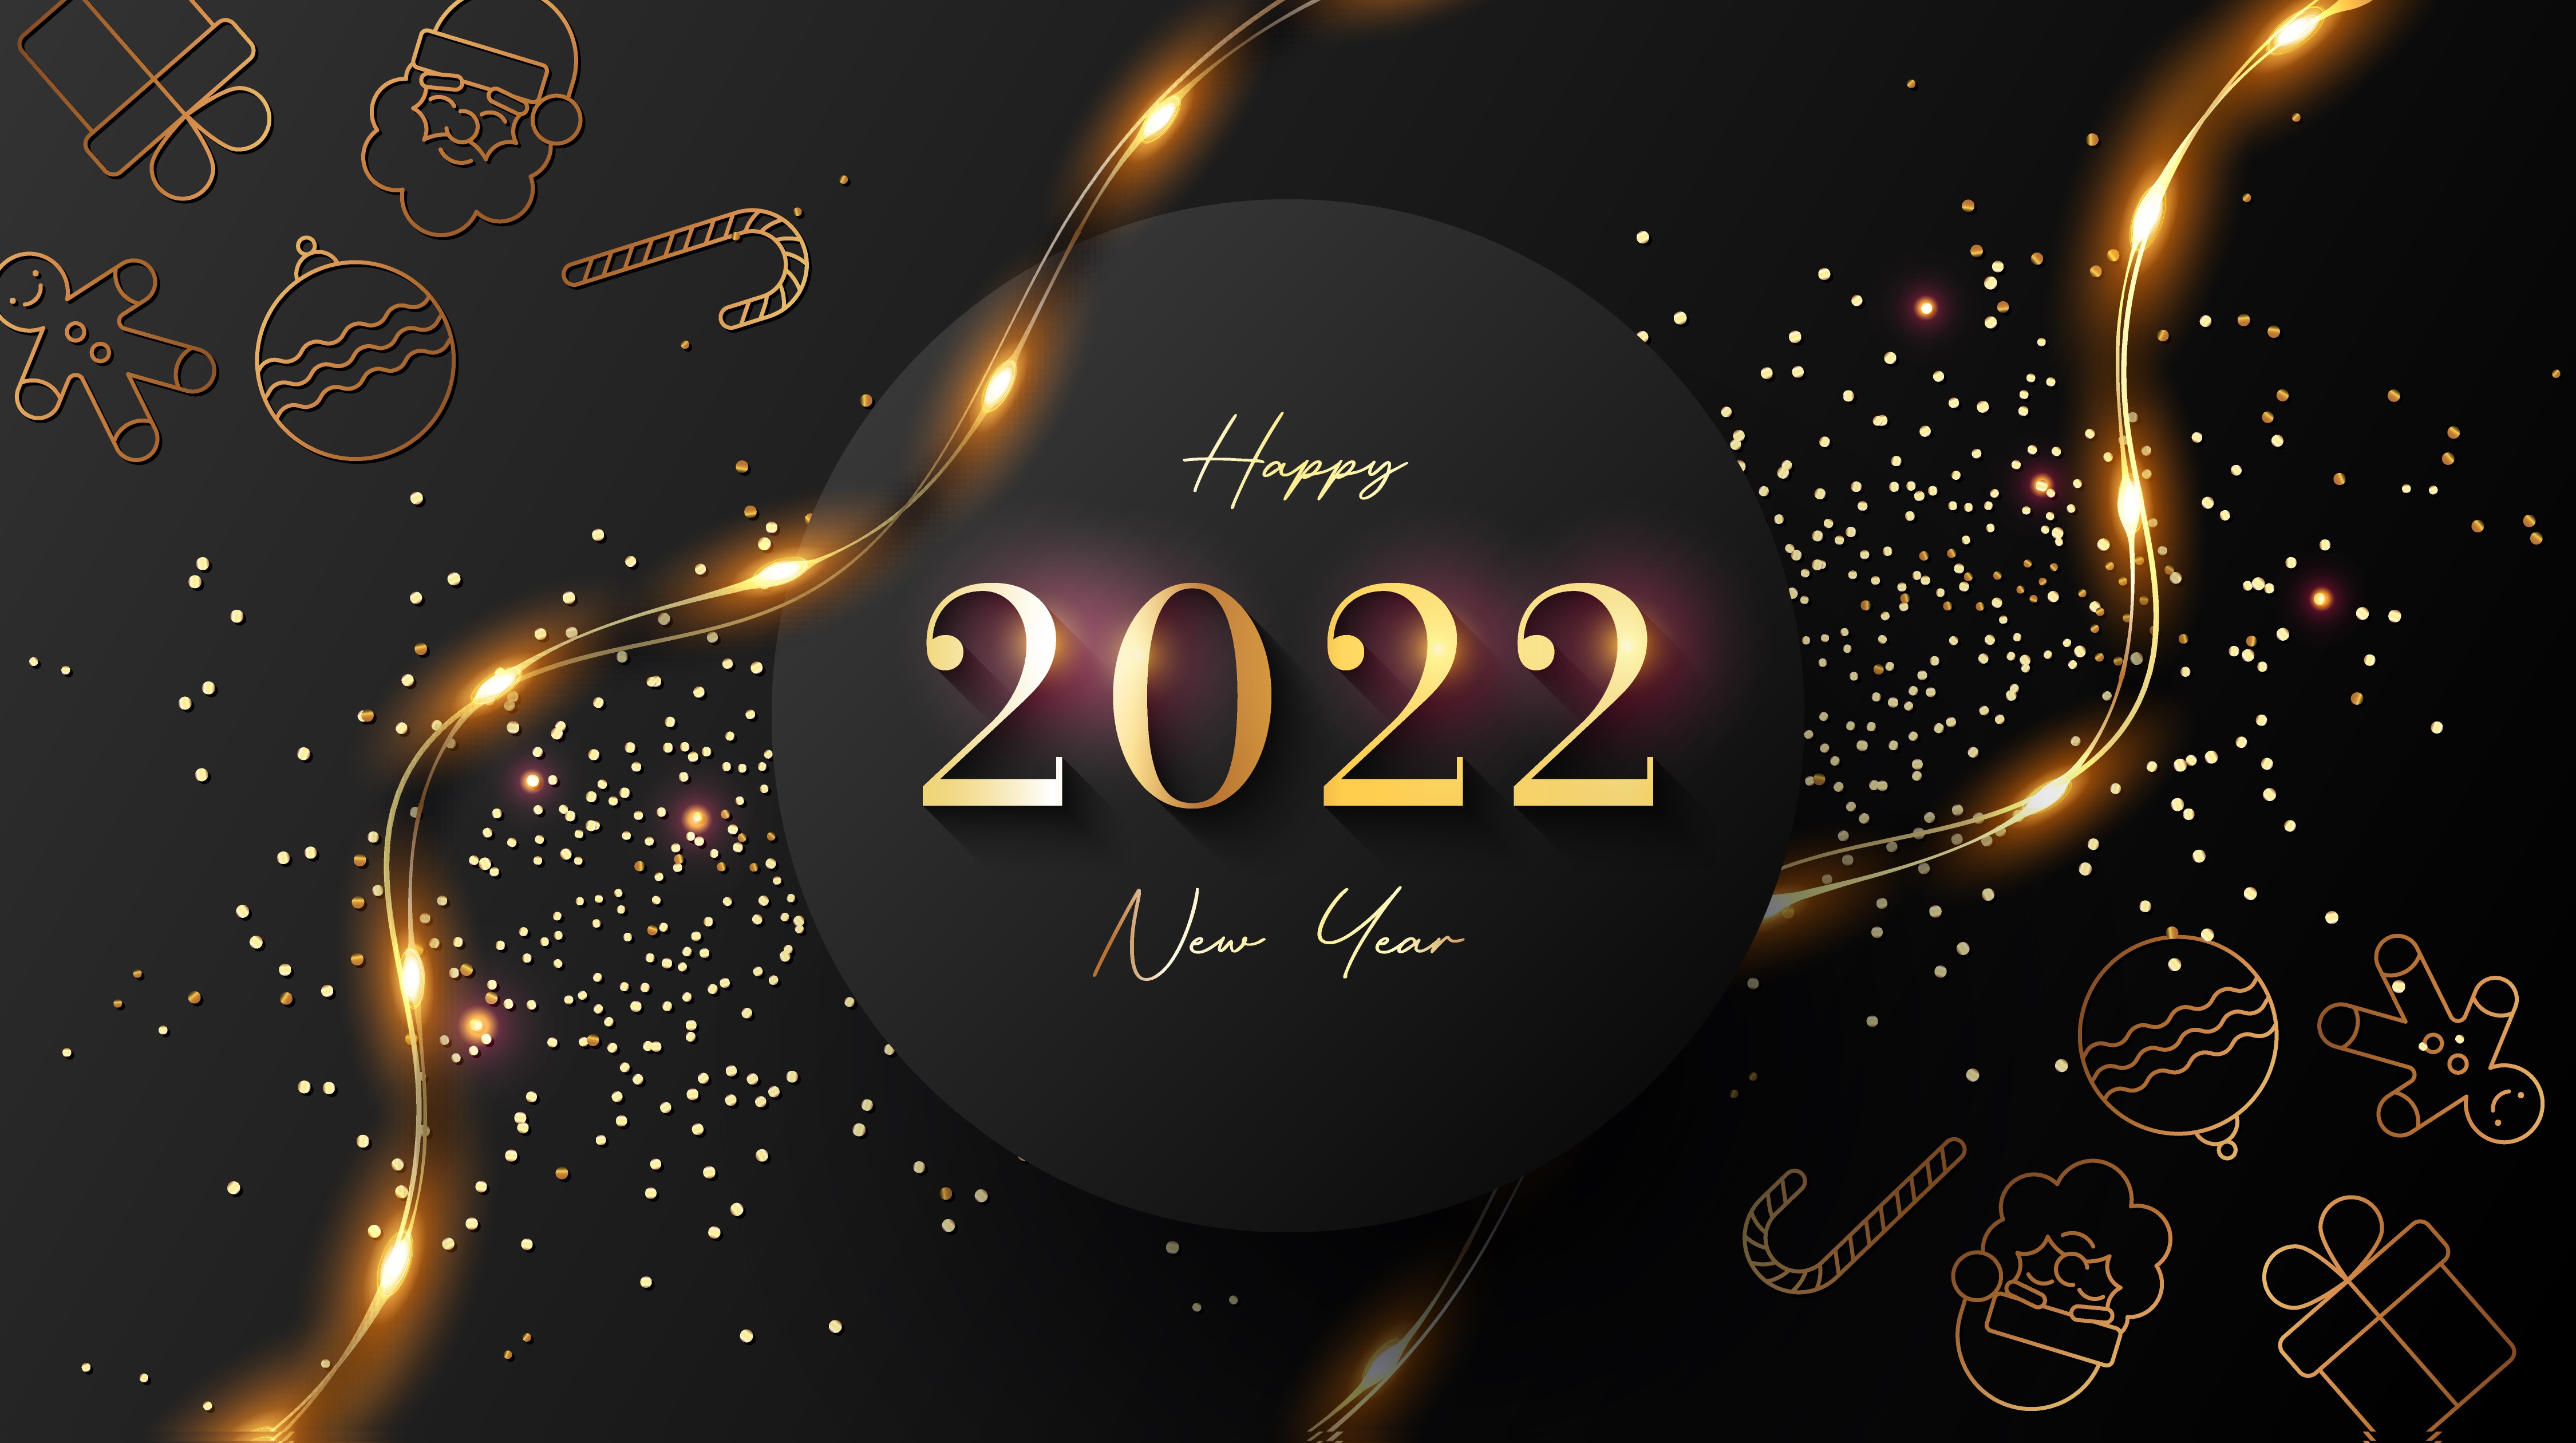 New Year 2022 4K Desktop Widescreen Wallpaper 